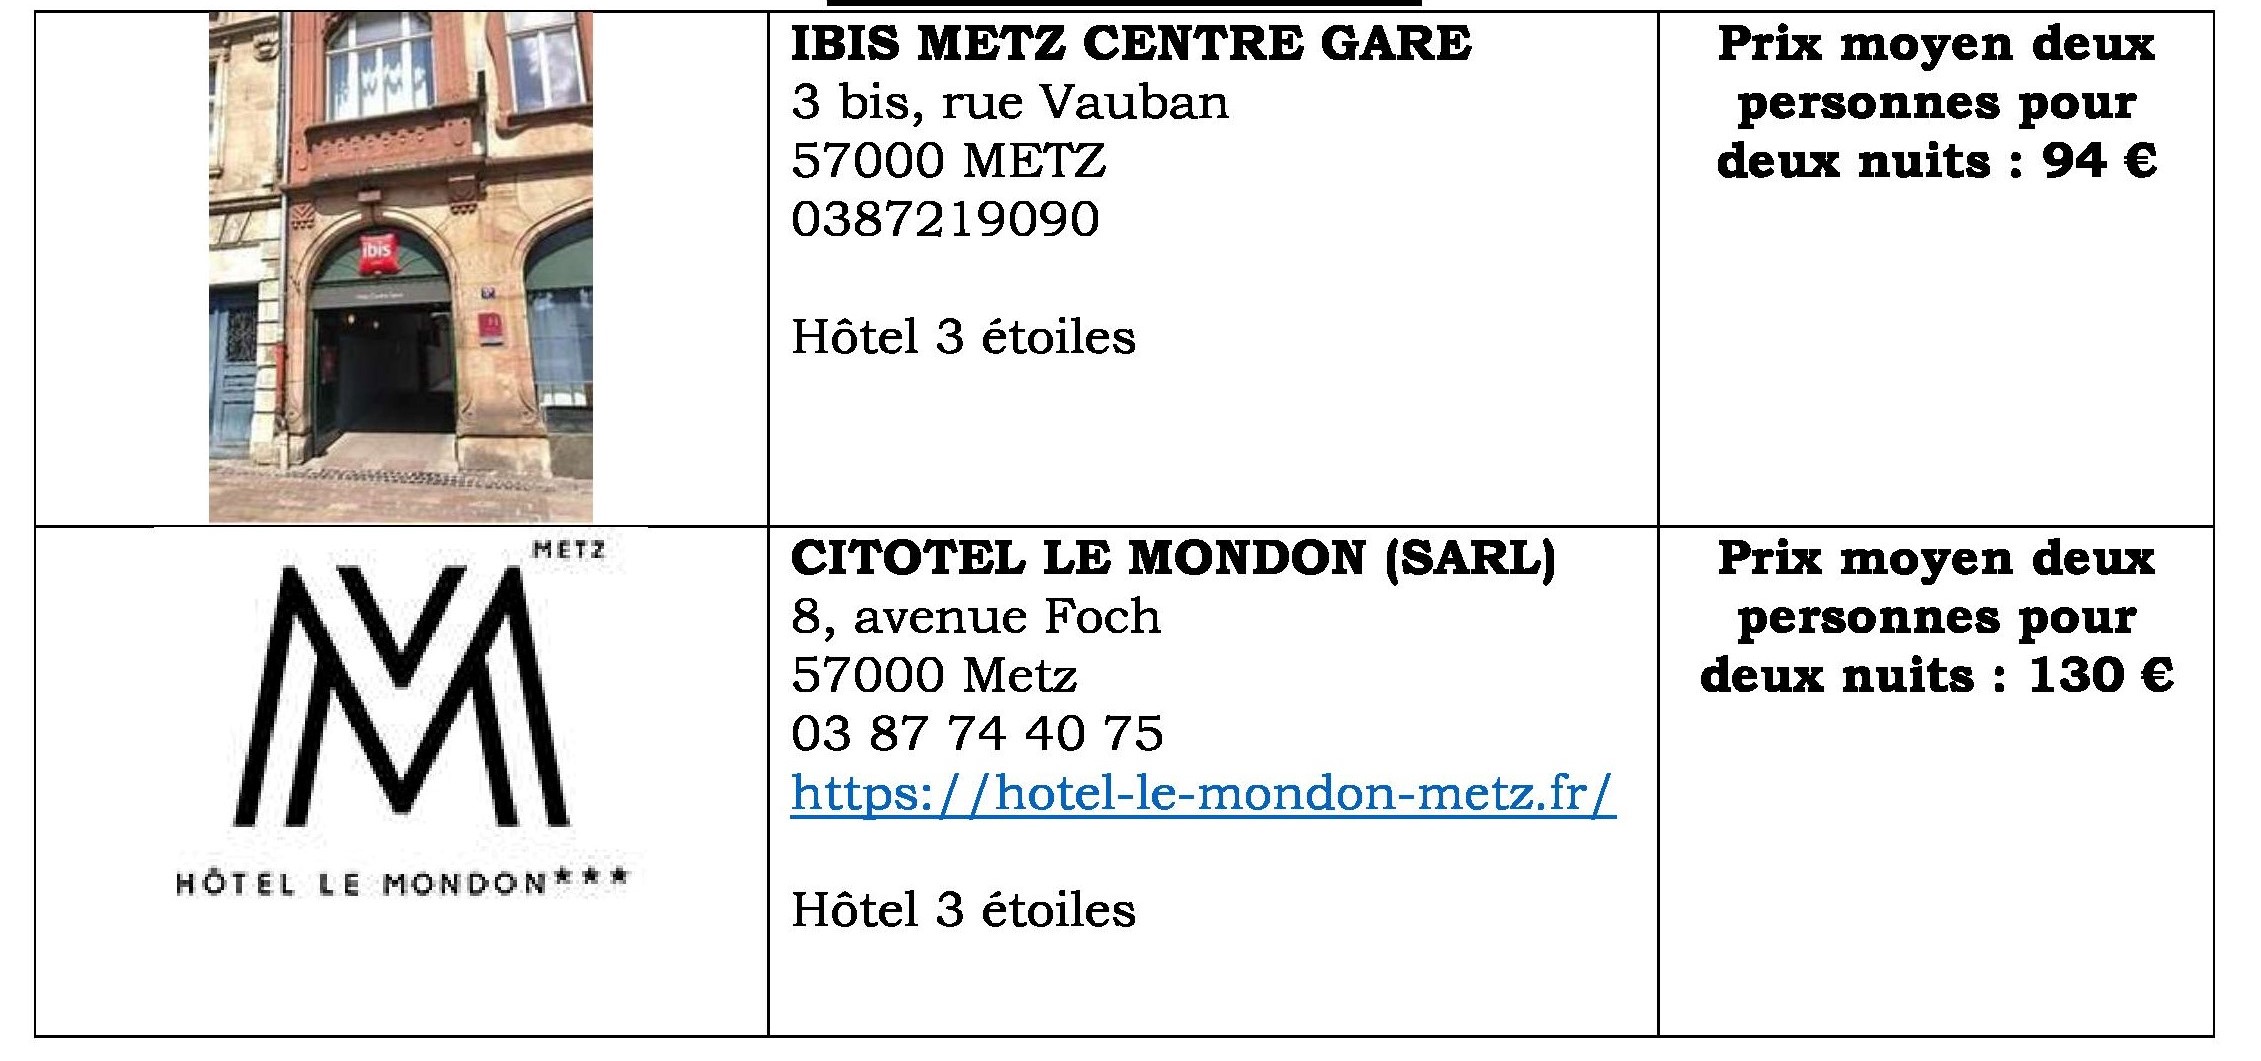 Comité décentralisé à Metz